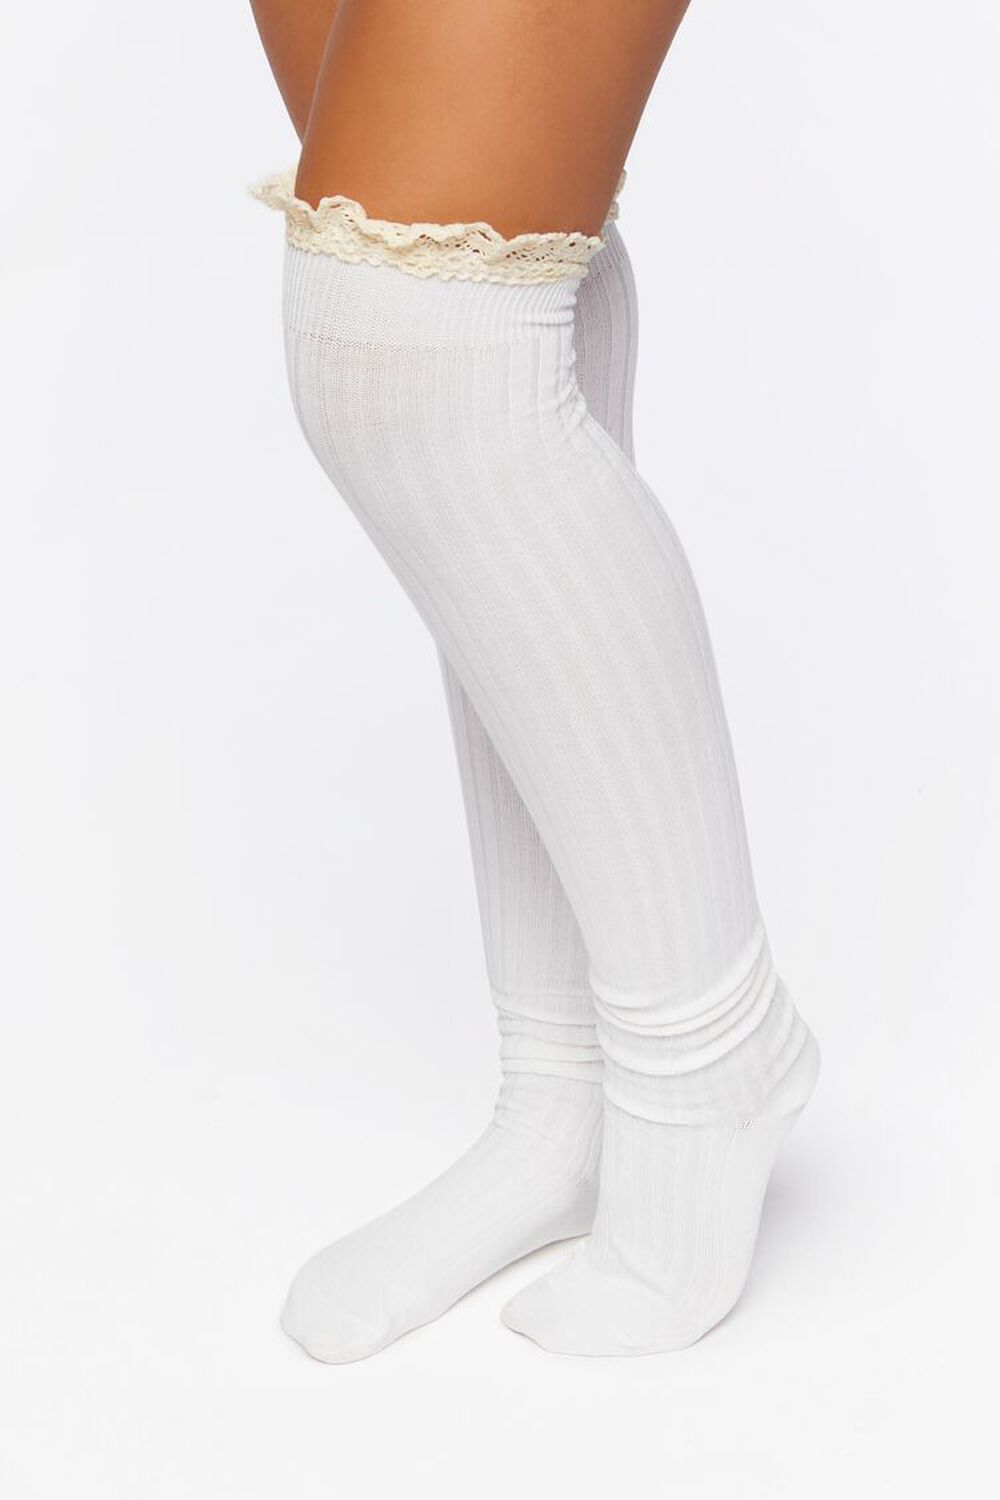 Crochet-Trim Over-the-Knee Socks, image 2